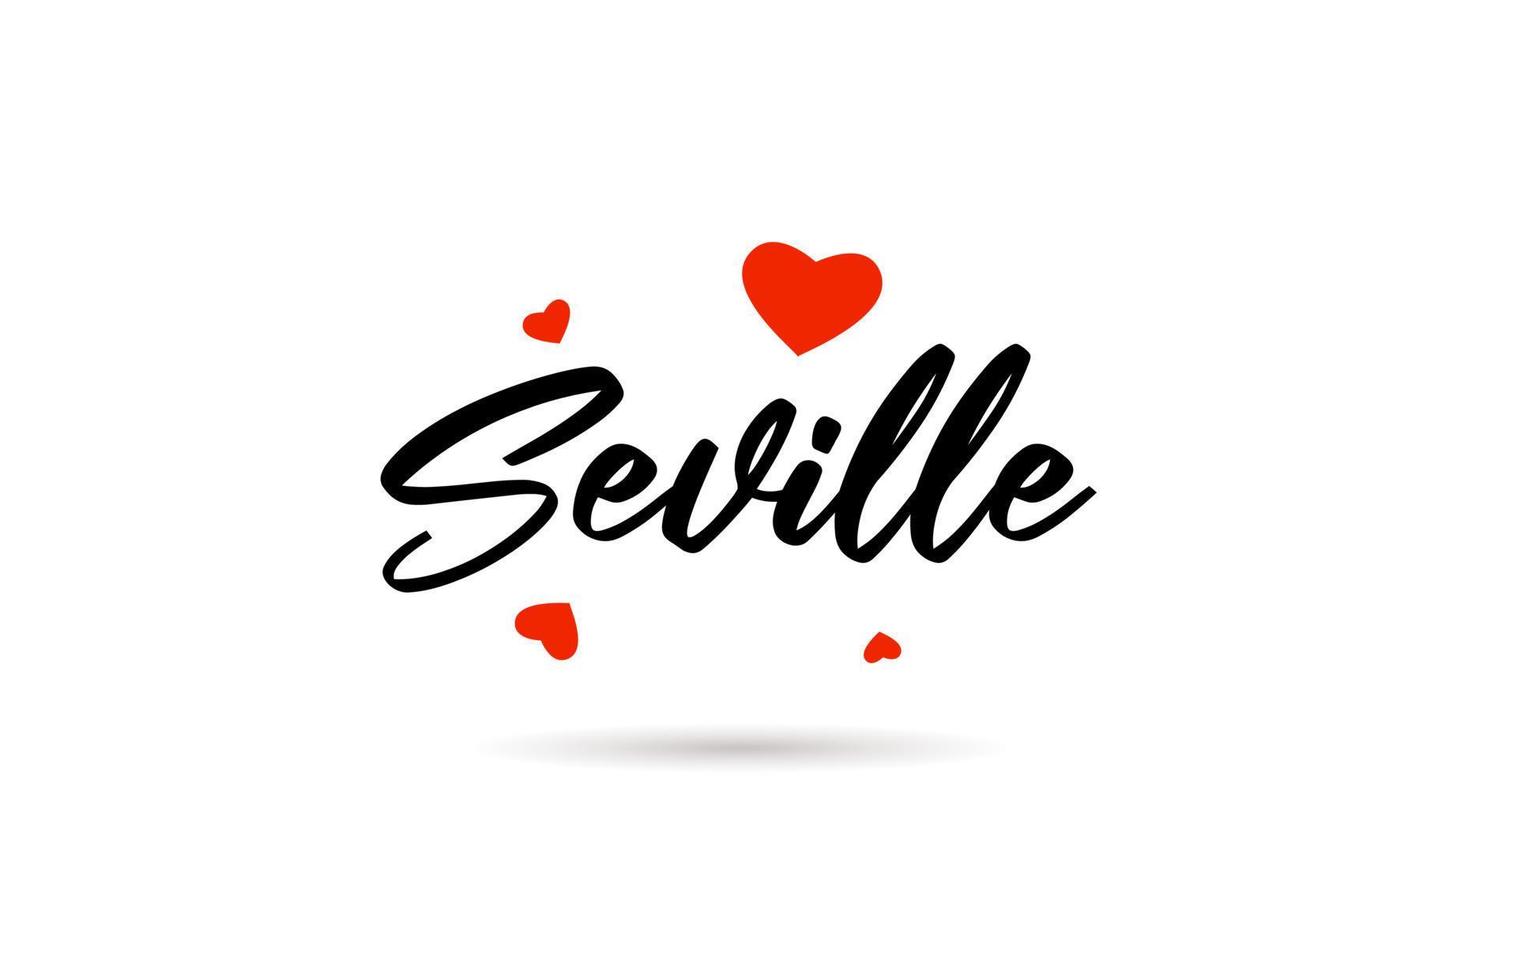 Sevilla handgeschreven stad typografie tekst met liefde hart vector